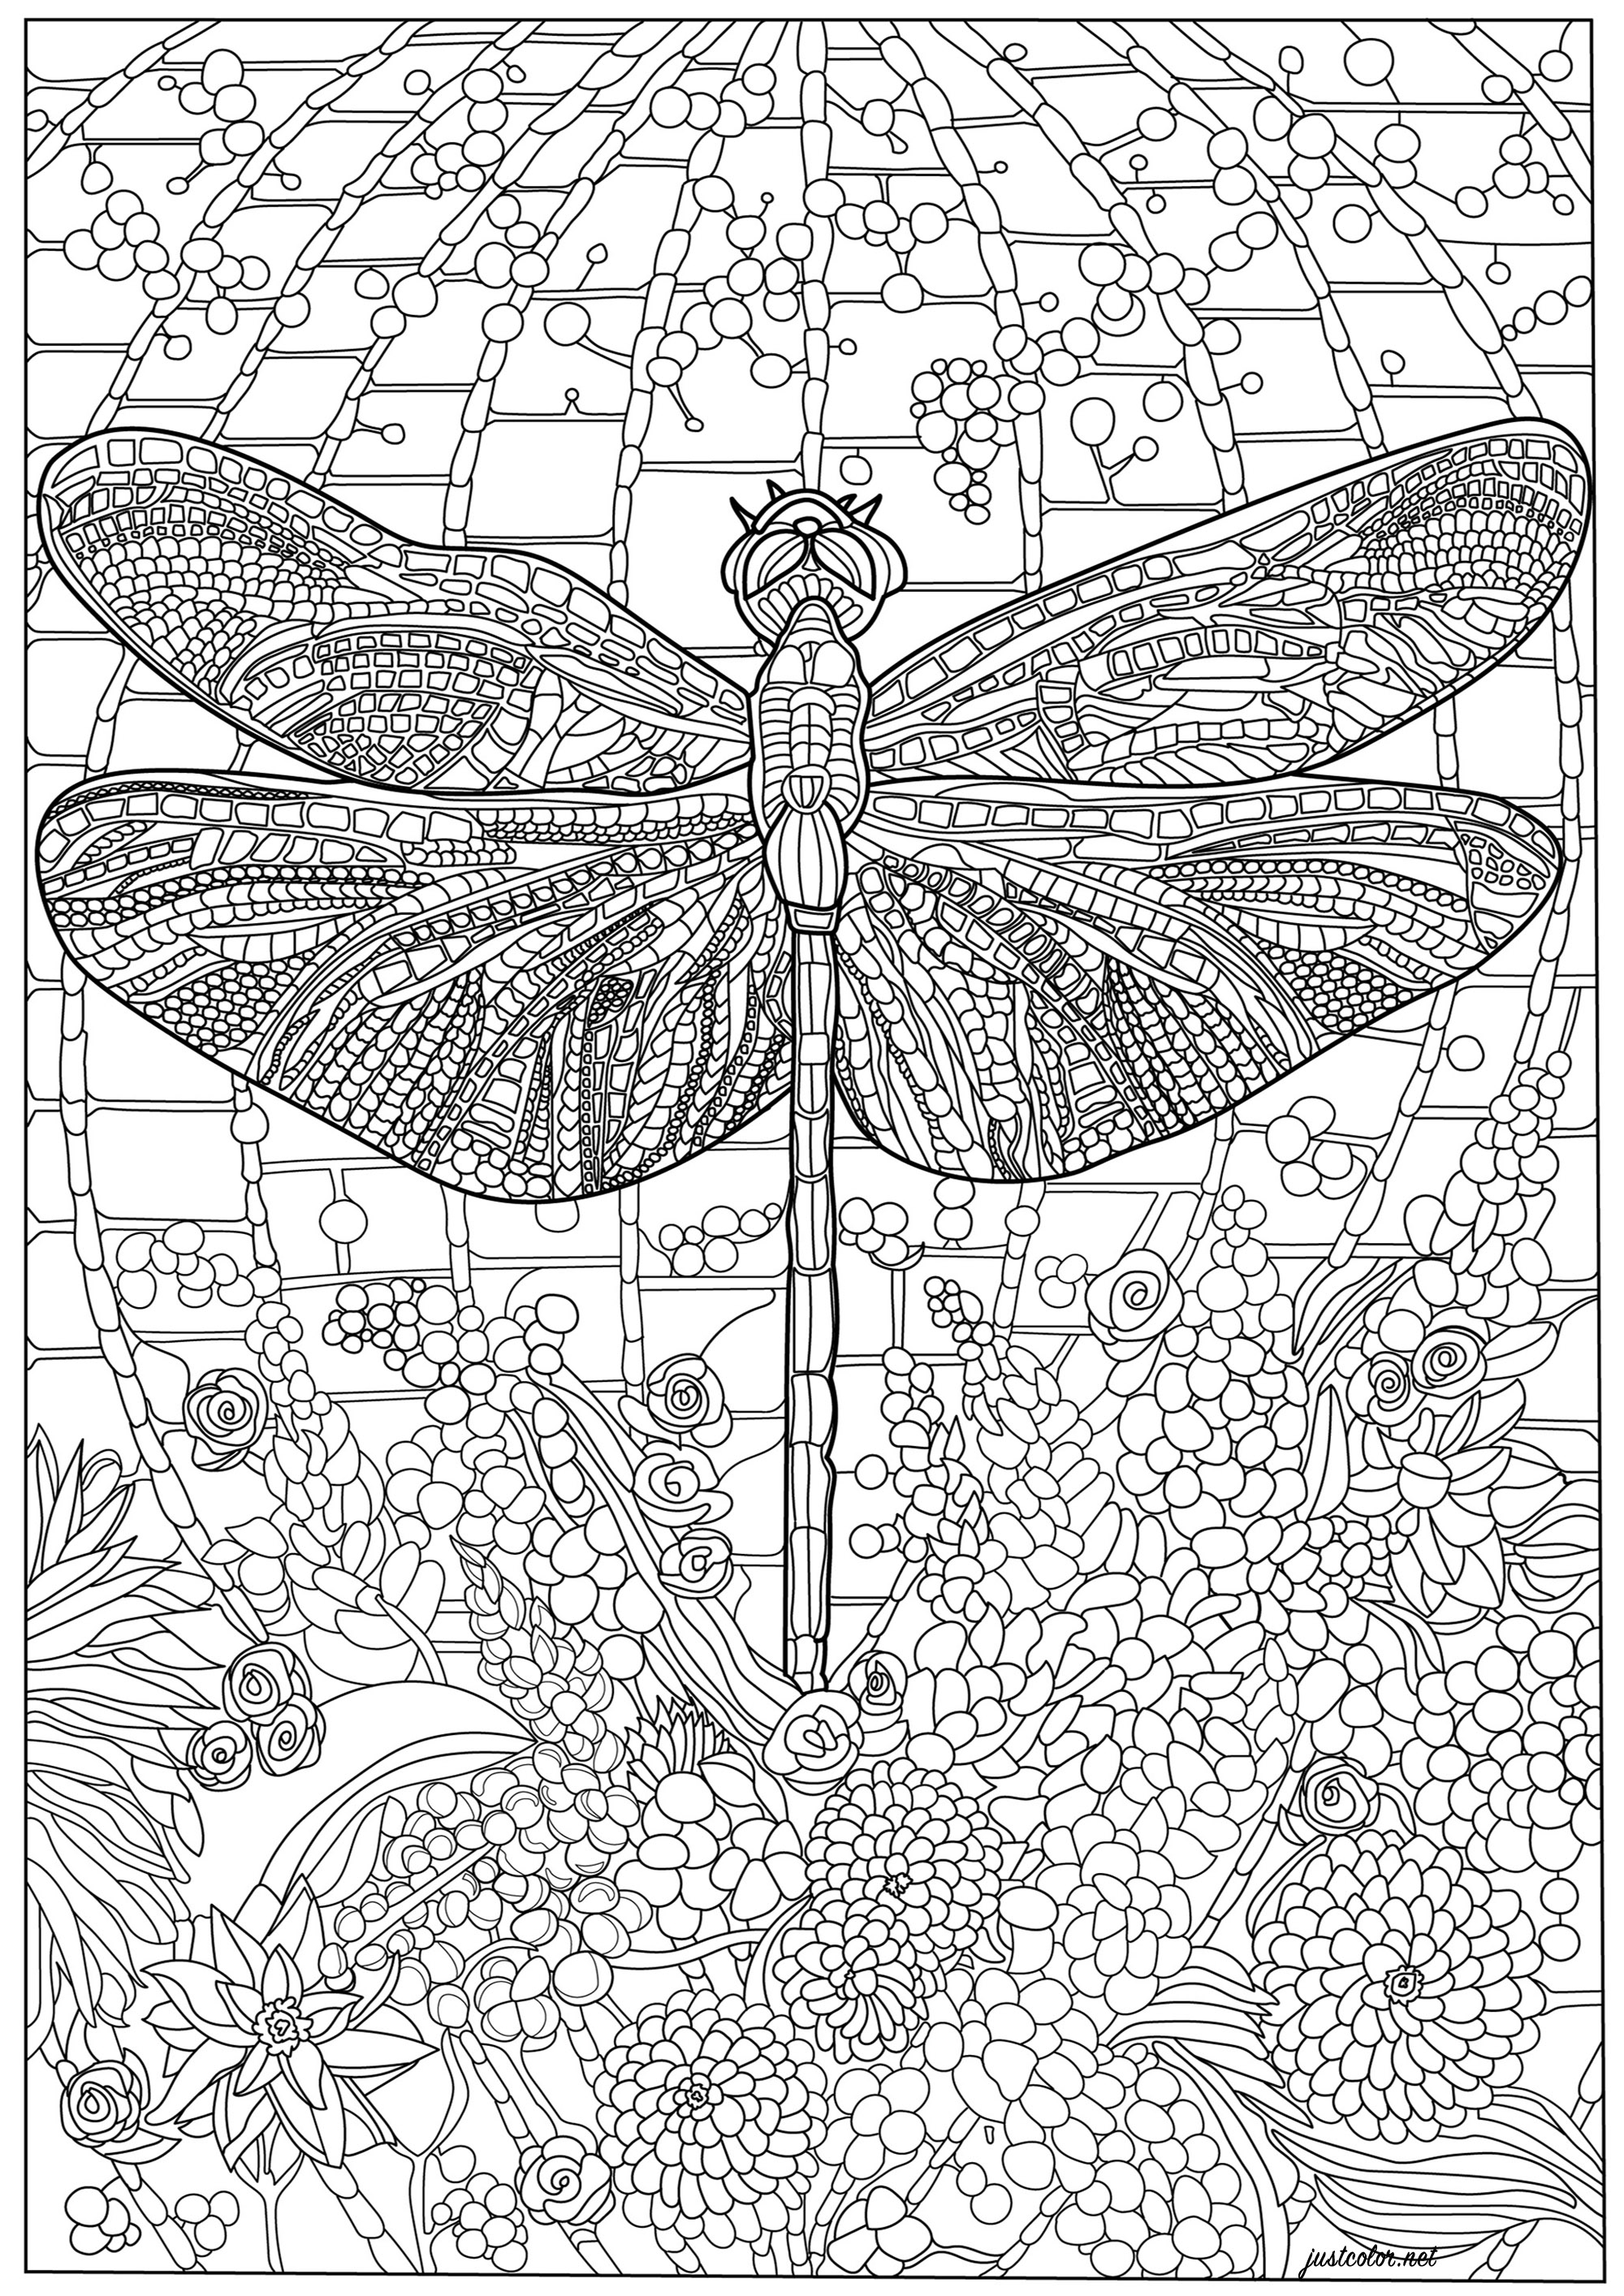 Libélula e muitos pormenores intrincados. Um esquema de cores repleto de pormenores, tanto no corpo da libélula como no fundo, Artista : Morgan